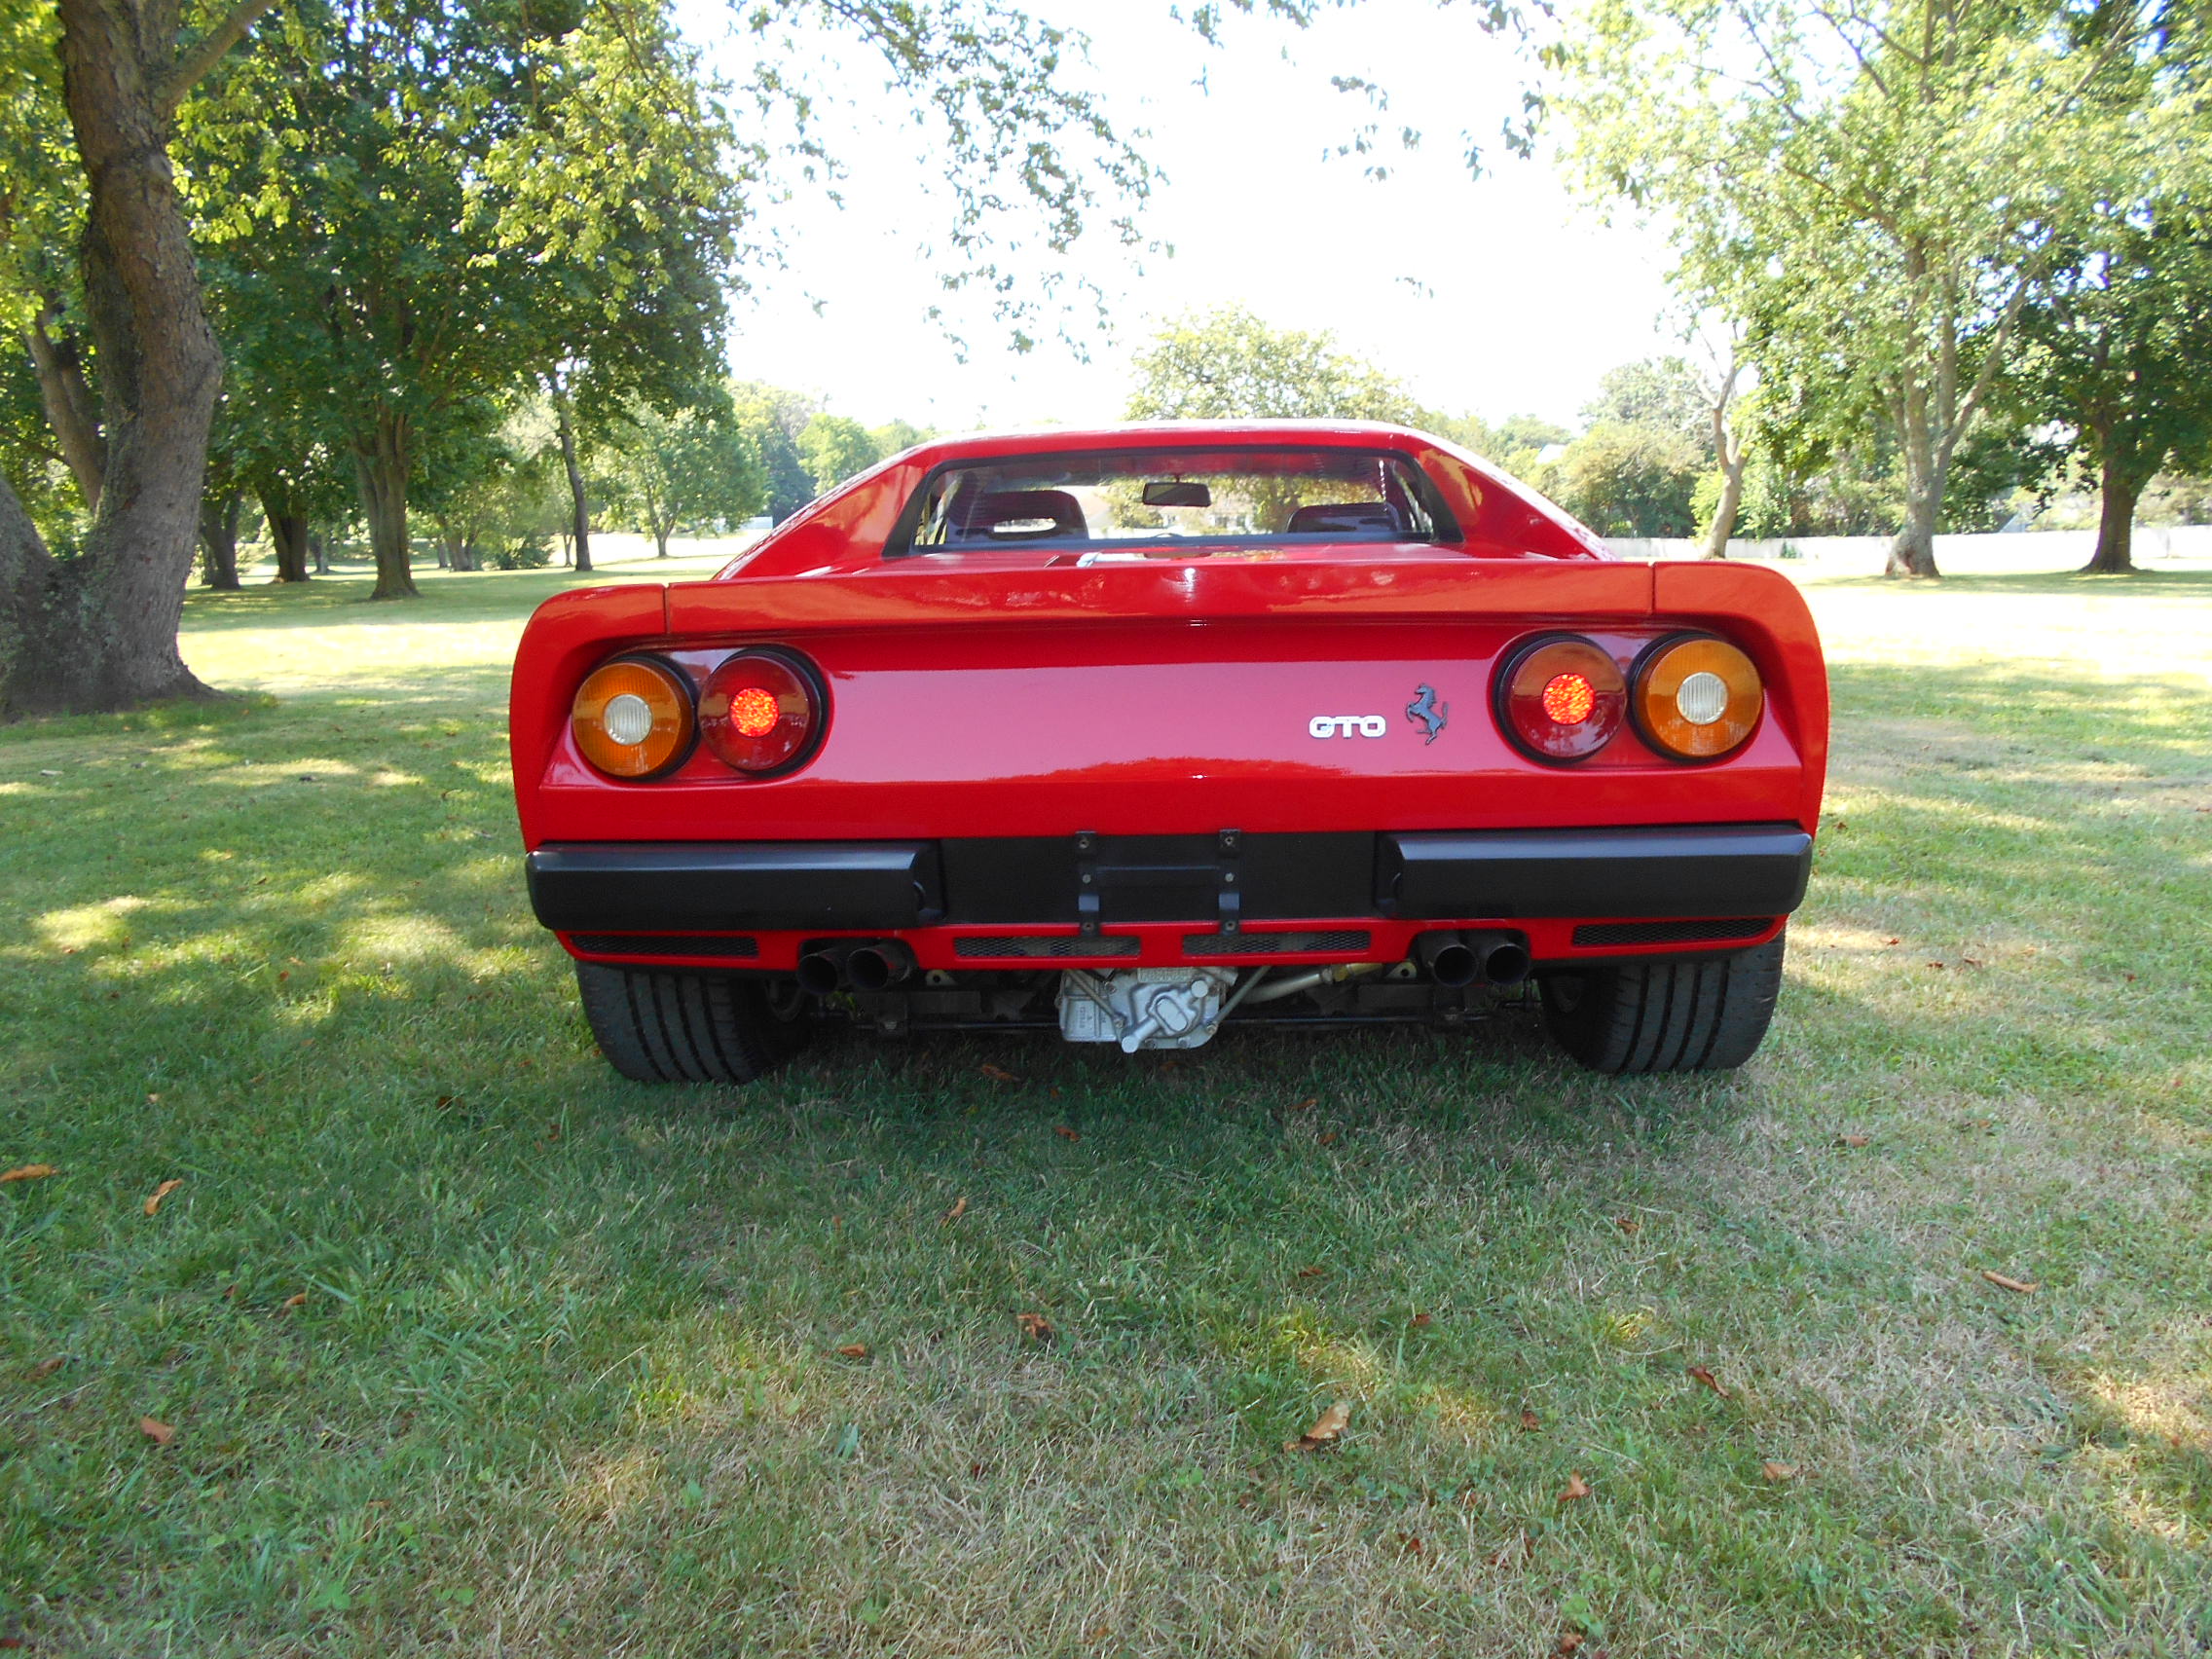 1985 288 GTO Ferrari - red